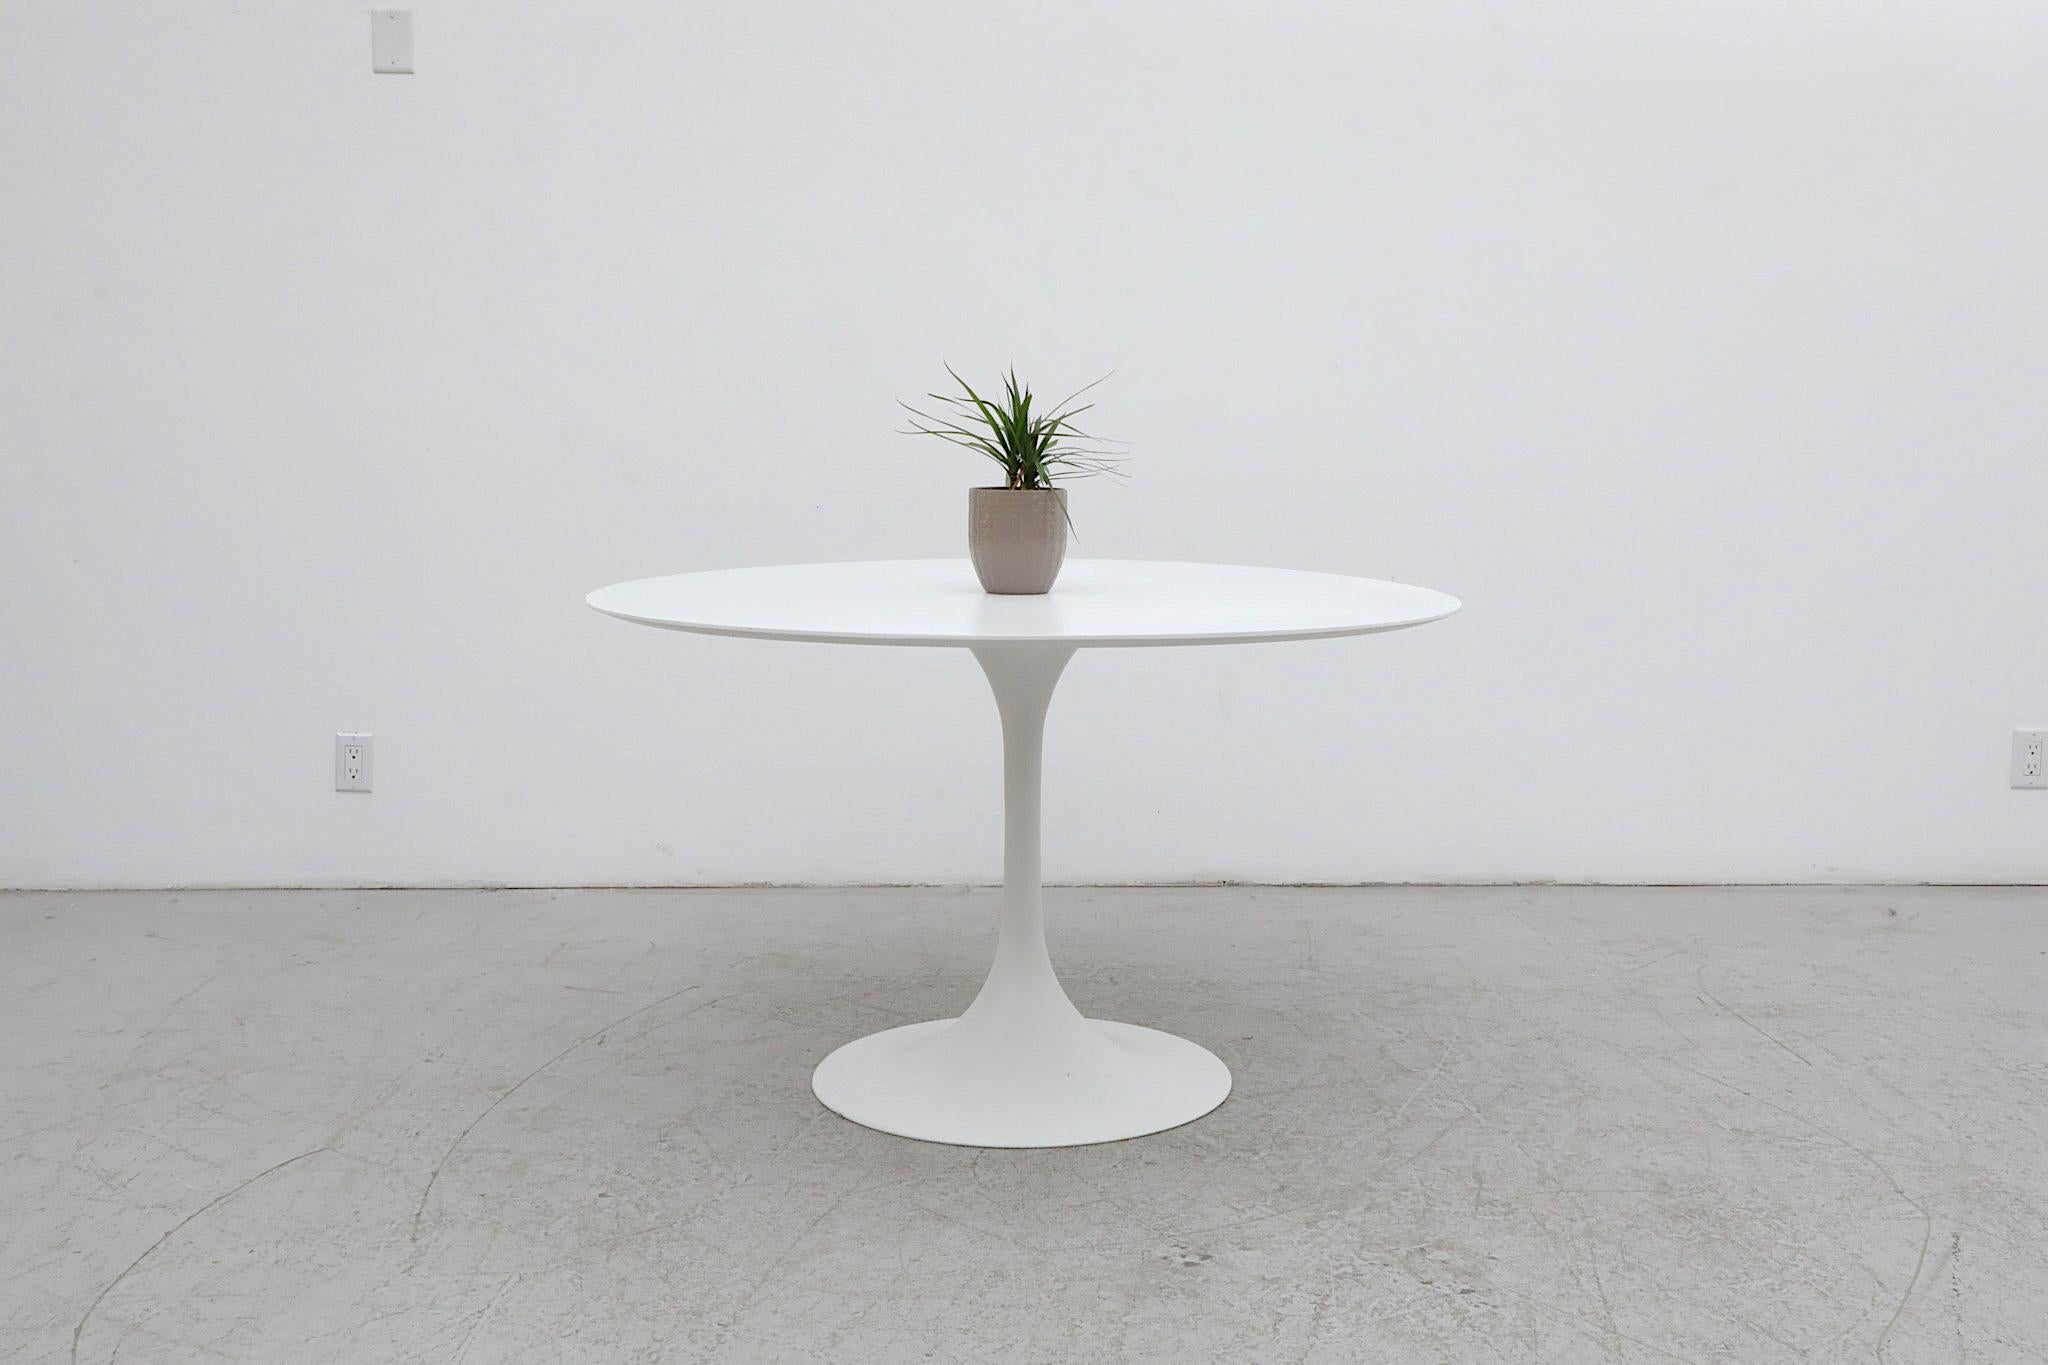 Eleganter und stilvoller Esstisch mit weißem Tulpenfuß, entworfen von Cees Braakman im Stil von Eero Saarinen für Pastoe. Die Niederlande. Man kann sagen, dass Braakman buchstäblich dazu geboren wurde, für das Unternehmen zu entwerfen, da er über